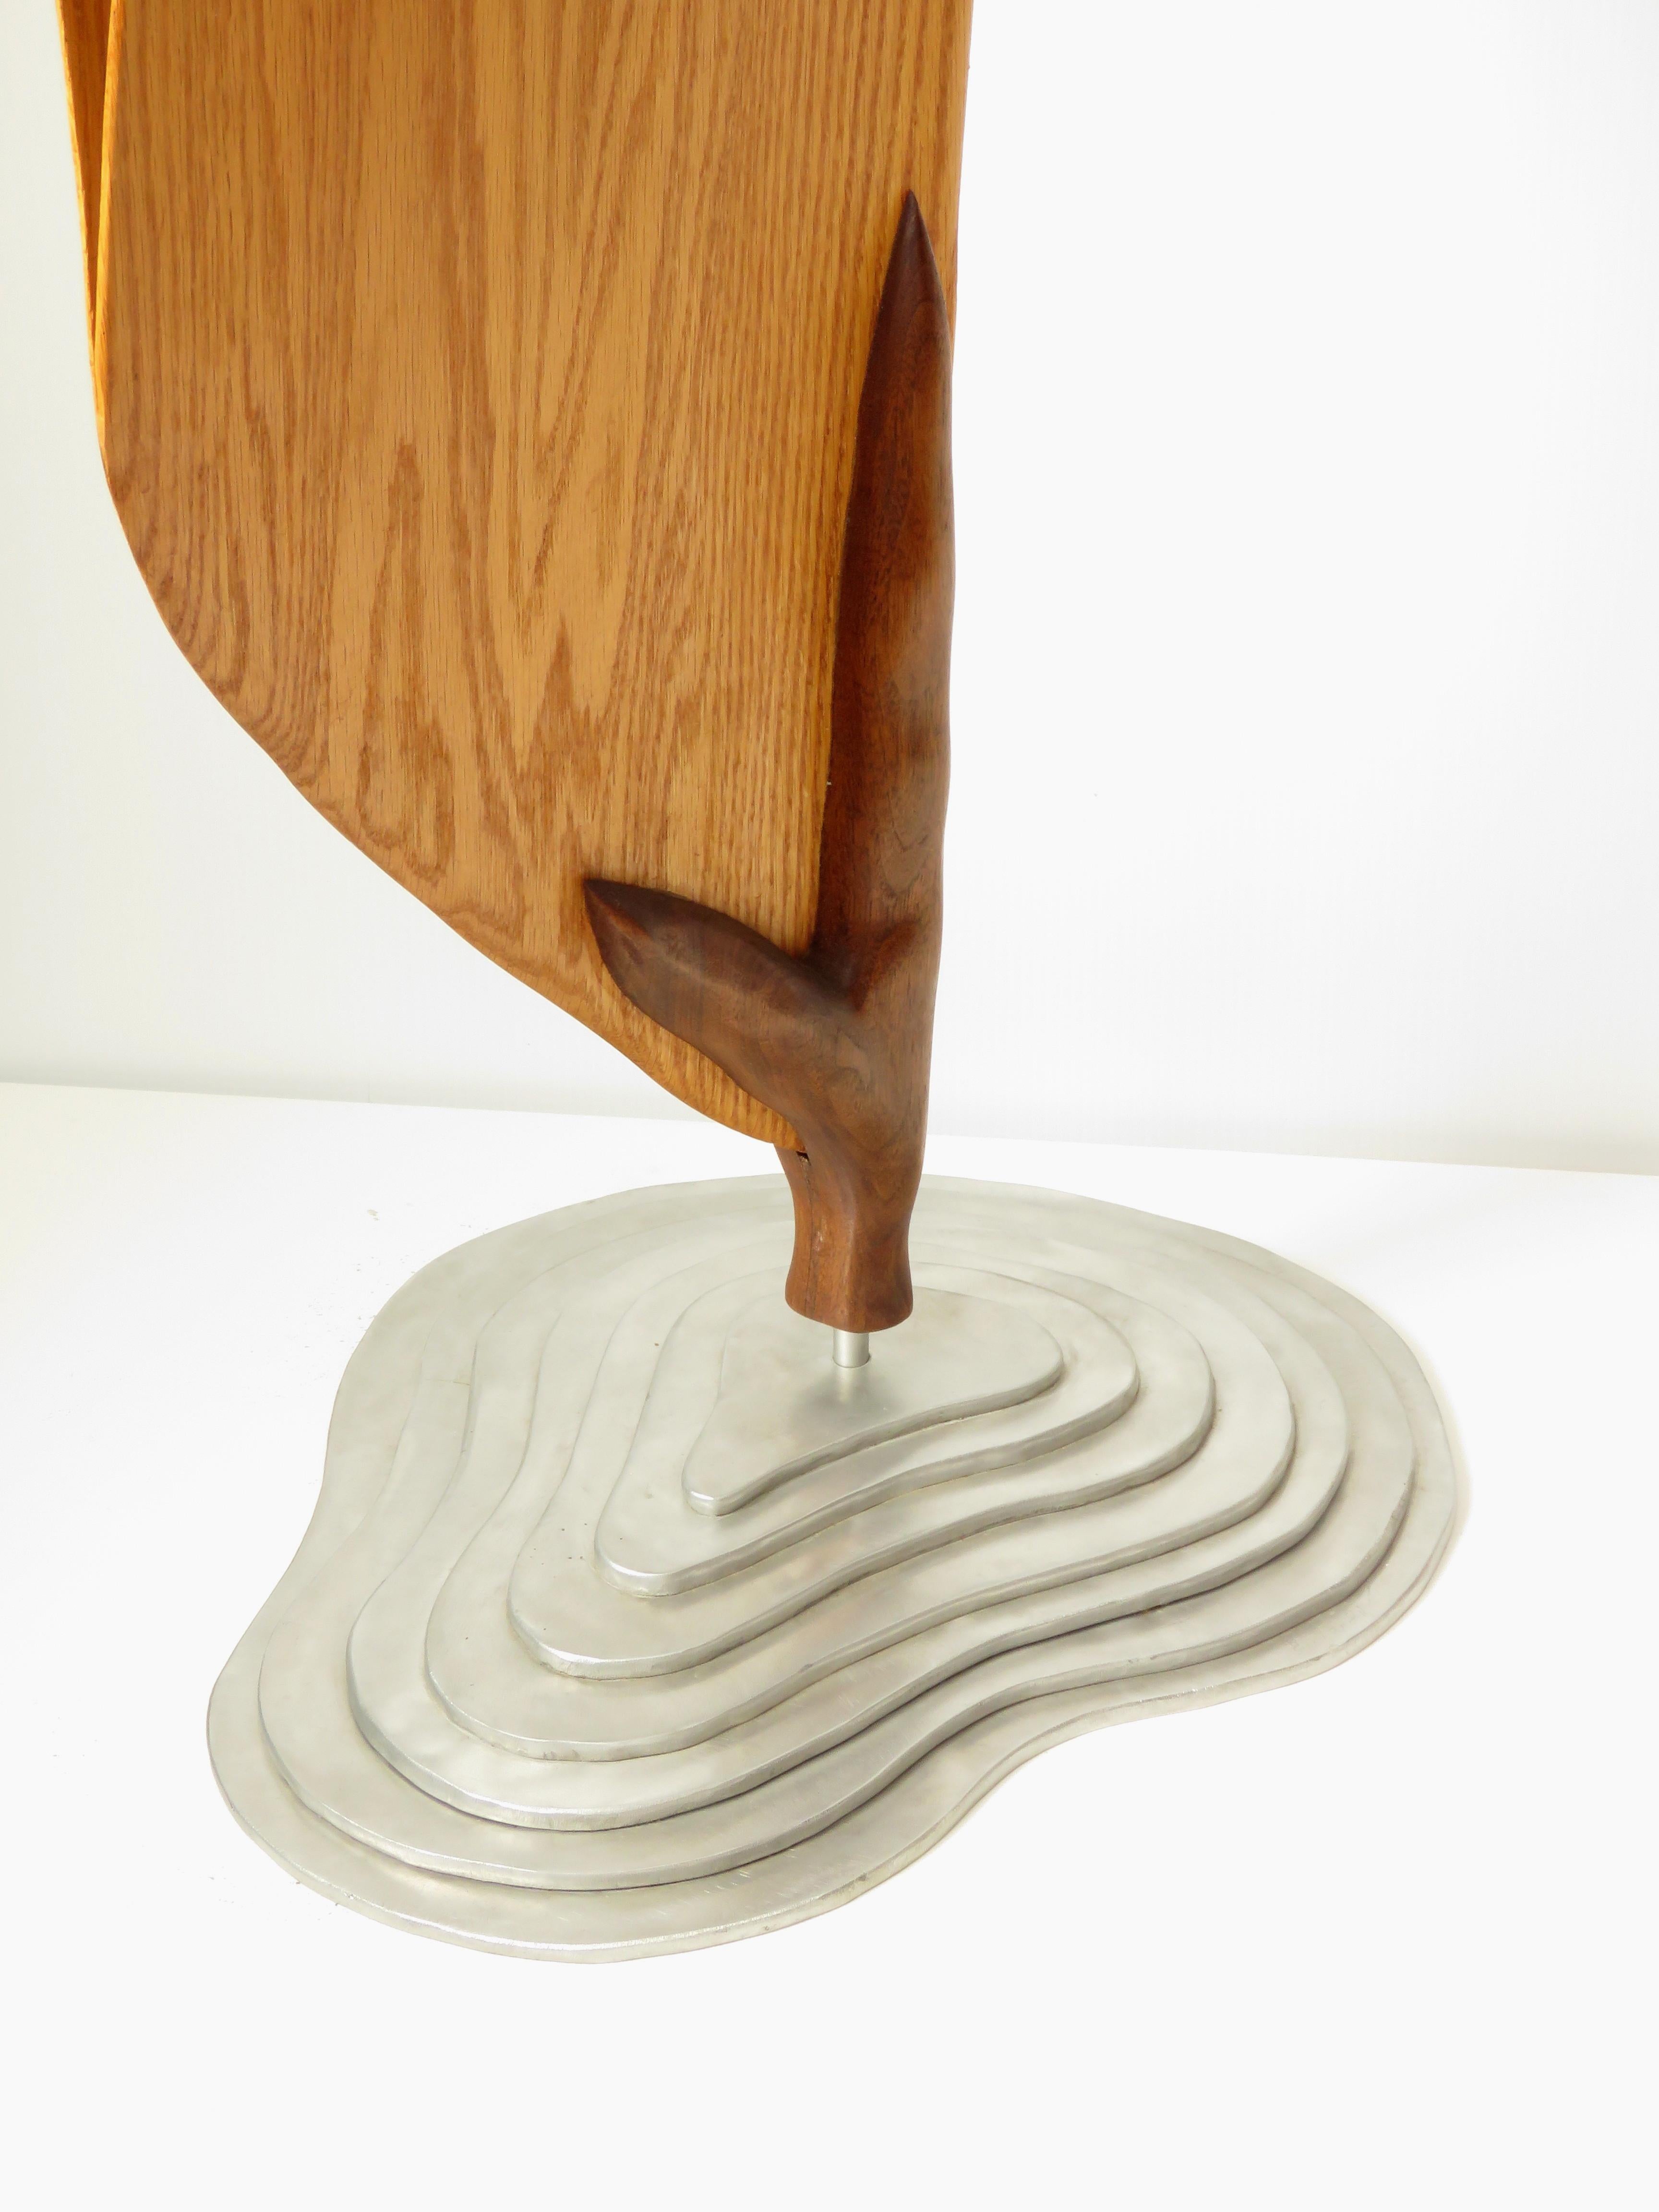 Cocoon (wood red oak bird abstract art zen sculpture pedestal minimal pea pod) - Sculpture by Eric Tardif